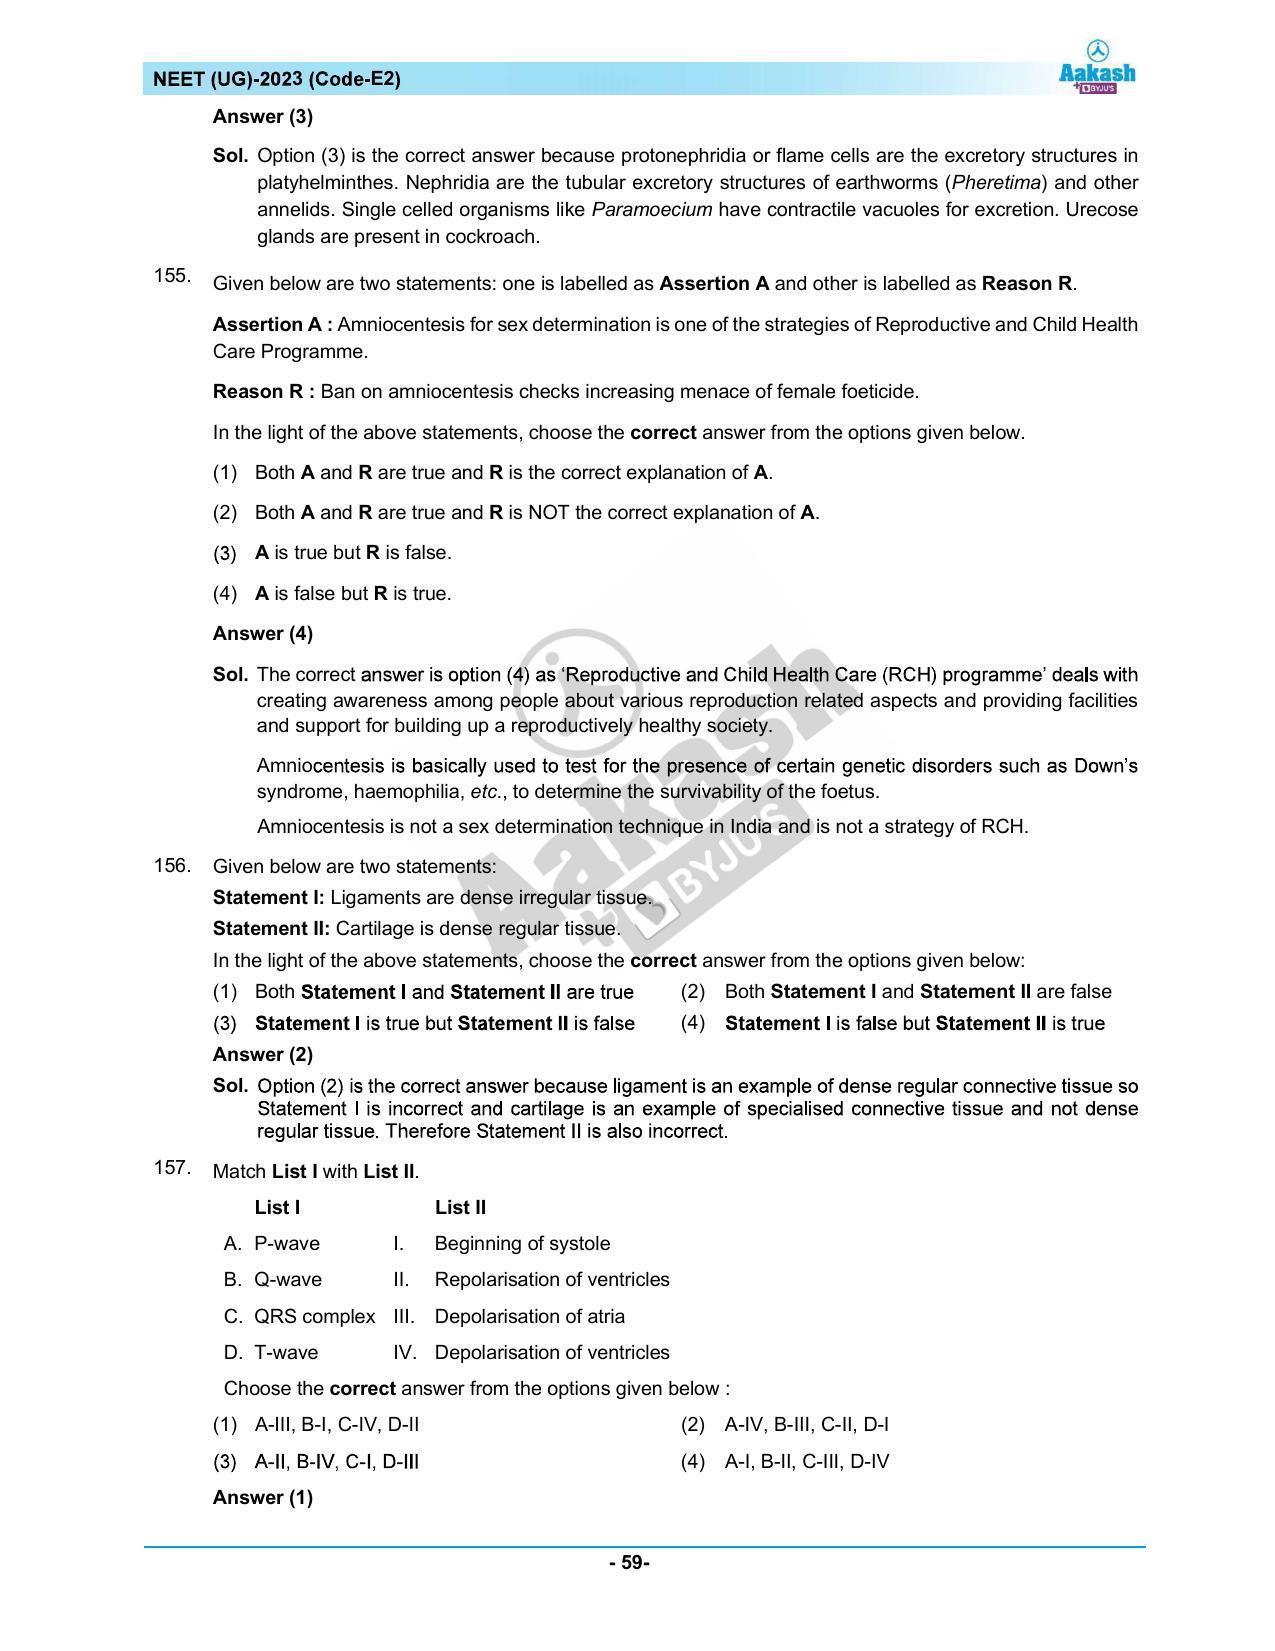 NEET 2023 Question Paper E2 - Page 59